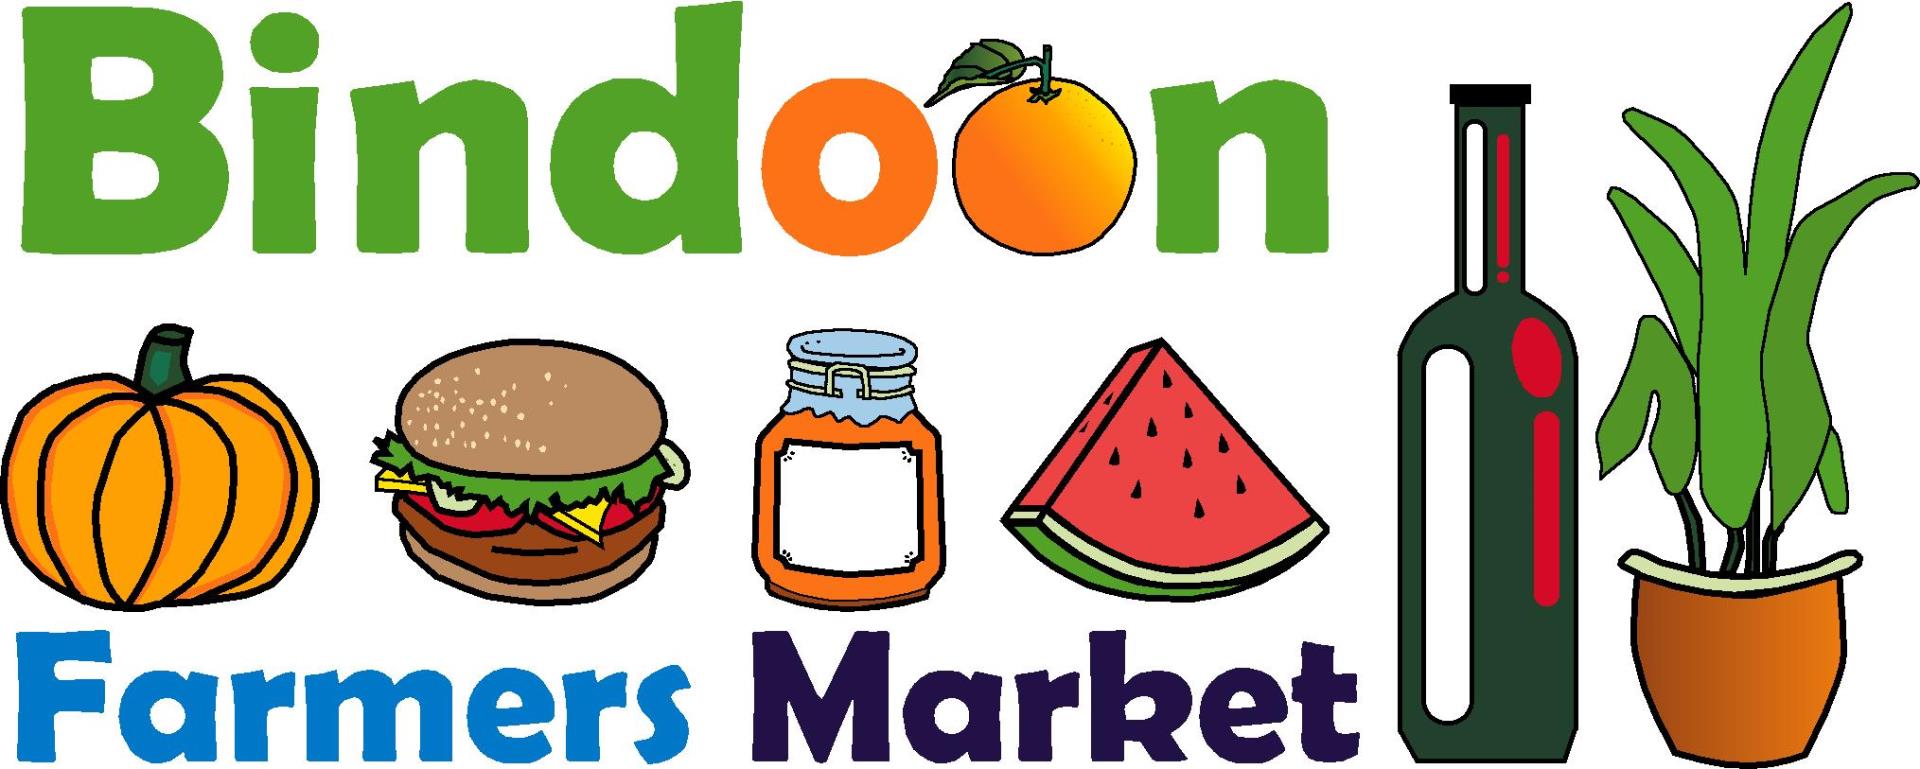 Bindoon Farmers Market